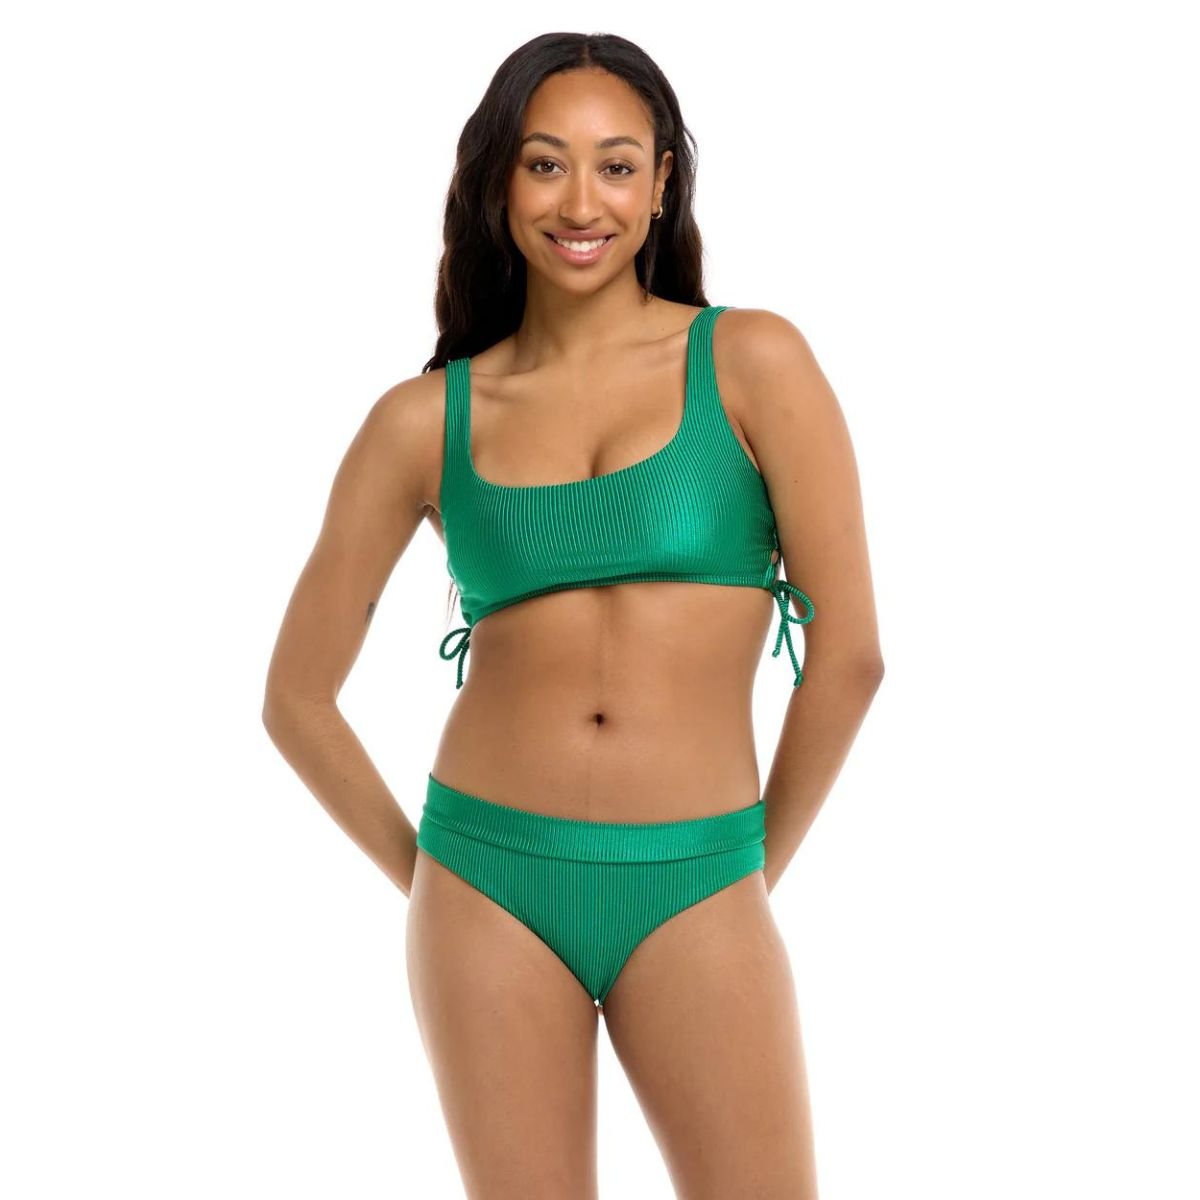 Body Glove Nifty Maxim Bikini Top in Emerald - BoardCo